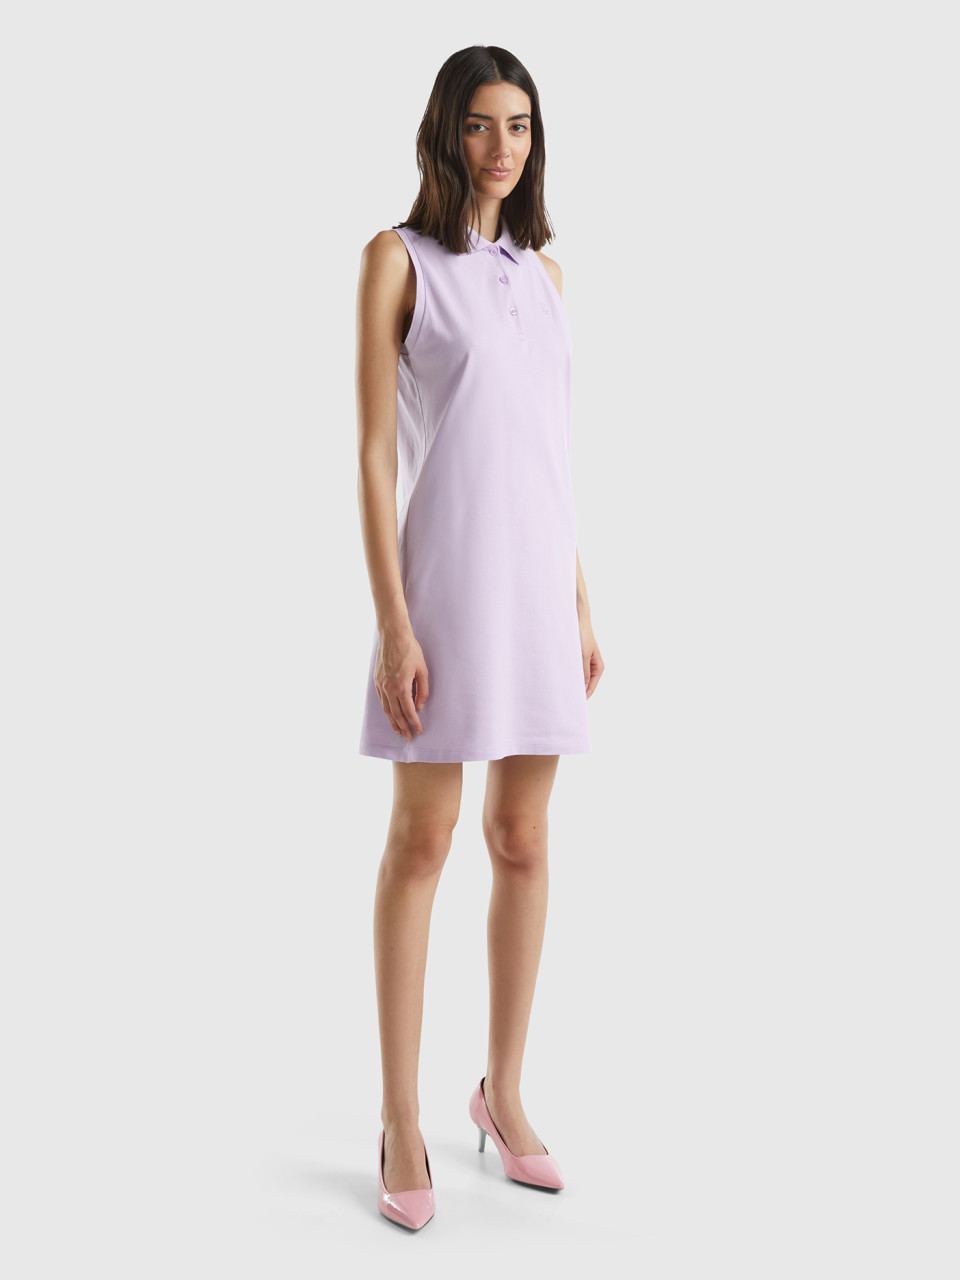 Benetton, Lilac Polo-style Dress, Lilac, Women